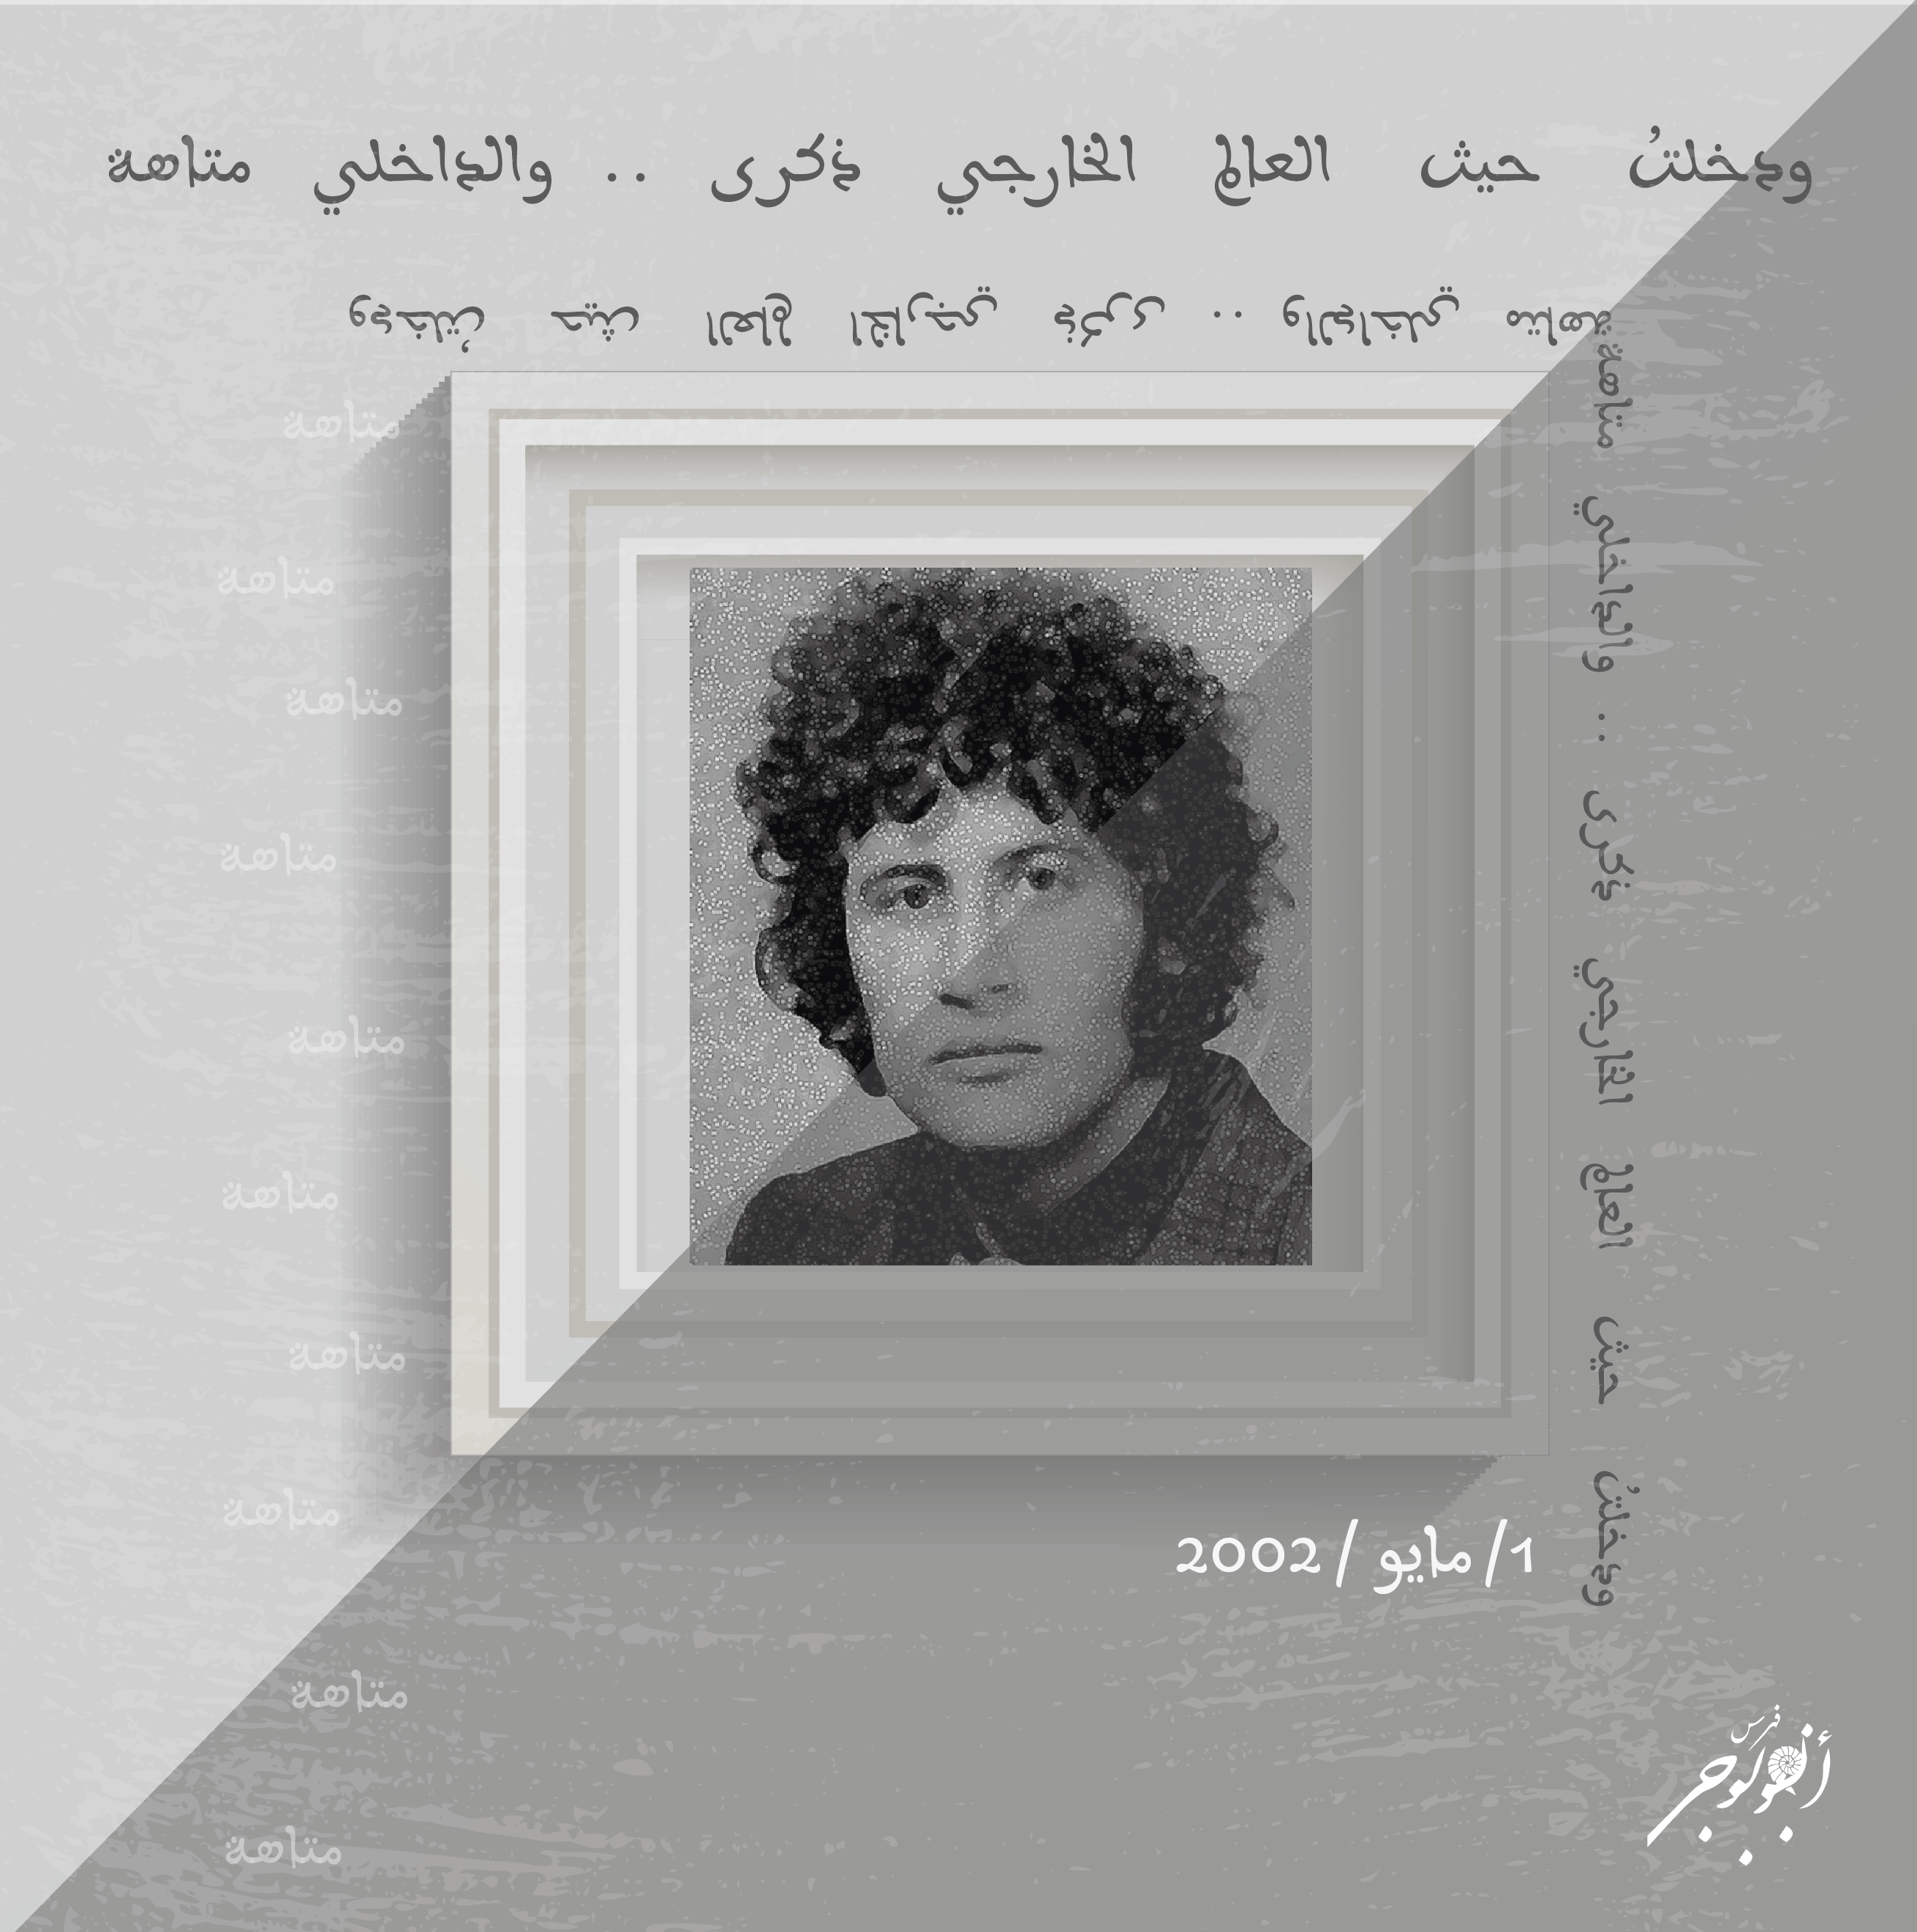 2 حسين البرغوثي 01 من كتابات الجنّ فيَّ - حسين البرغوثي